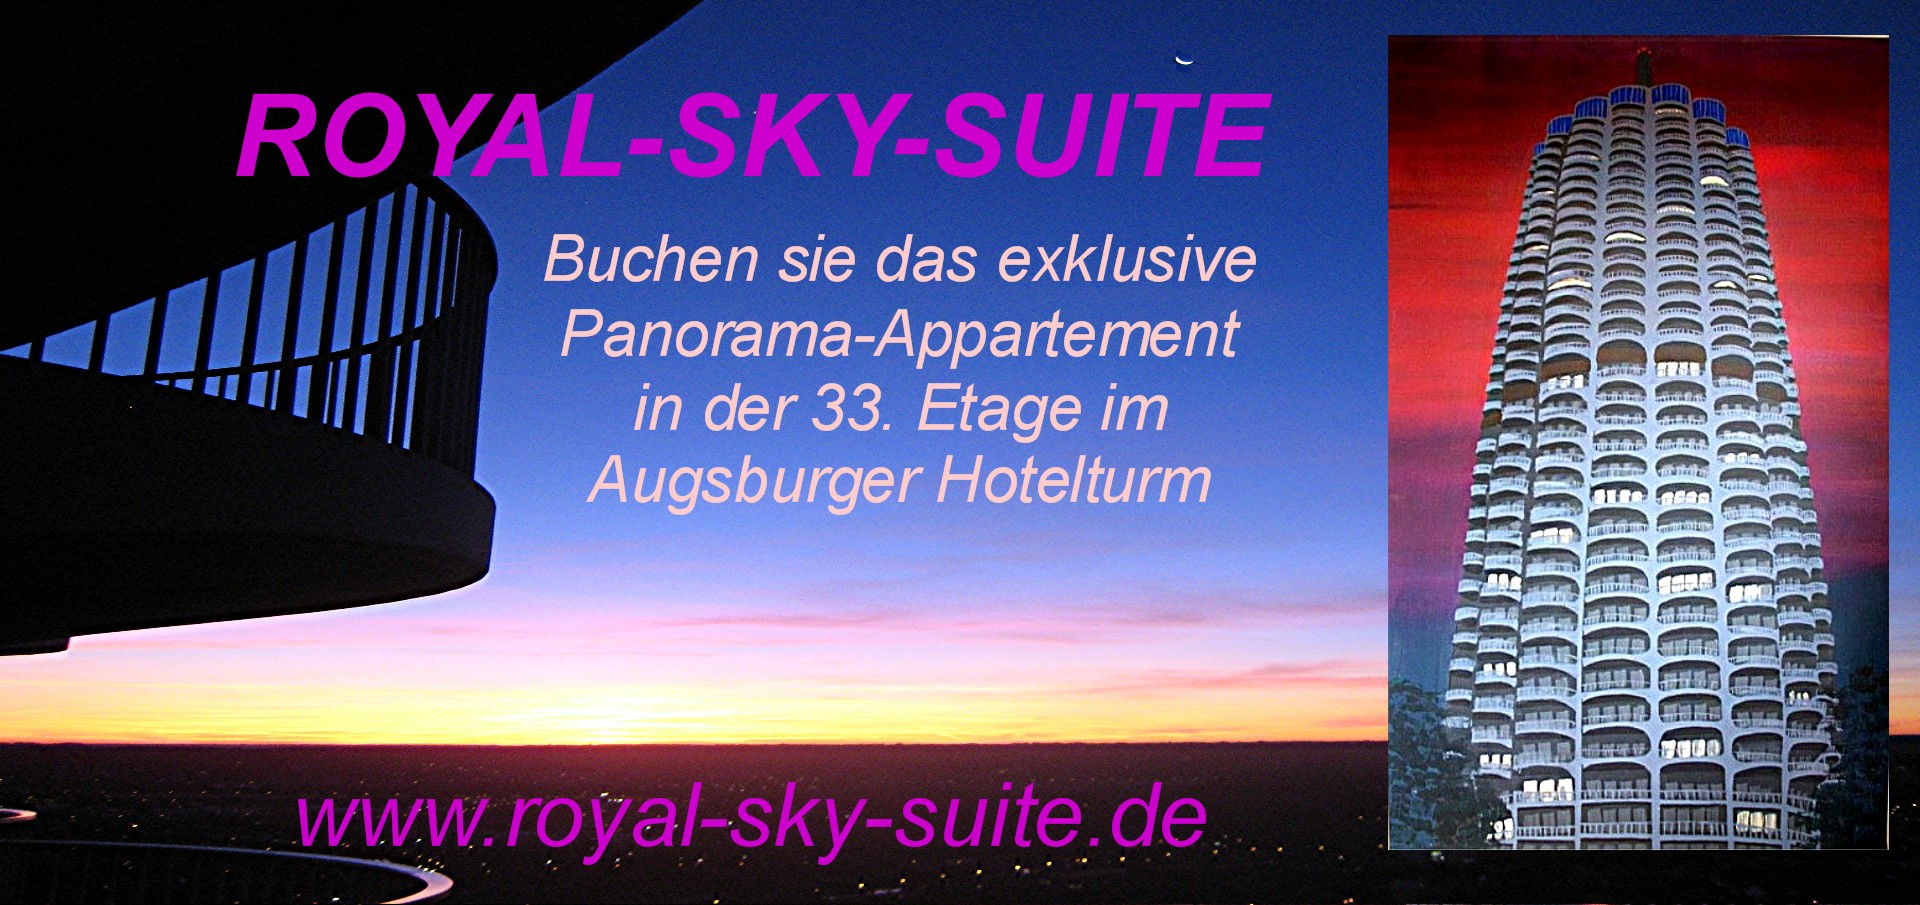 Royal-Sky-Suite Hotelturm Augsburg